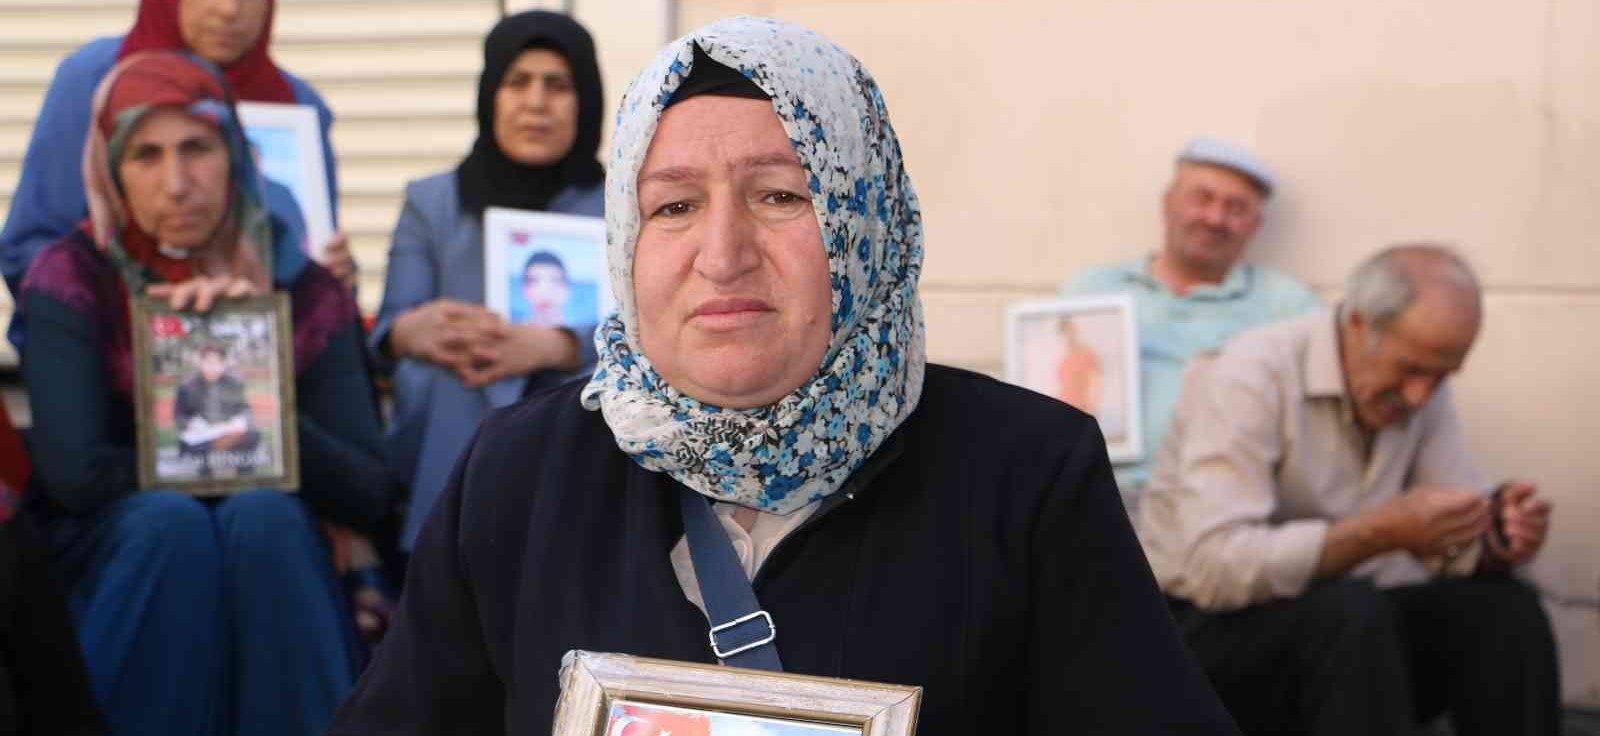 PKK mağduru anneden oğluna çağrı: "Bu acı sen geldiğinde son bulacak"